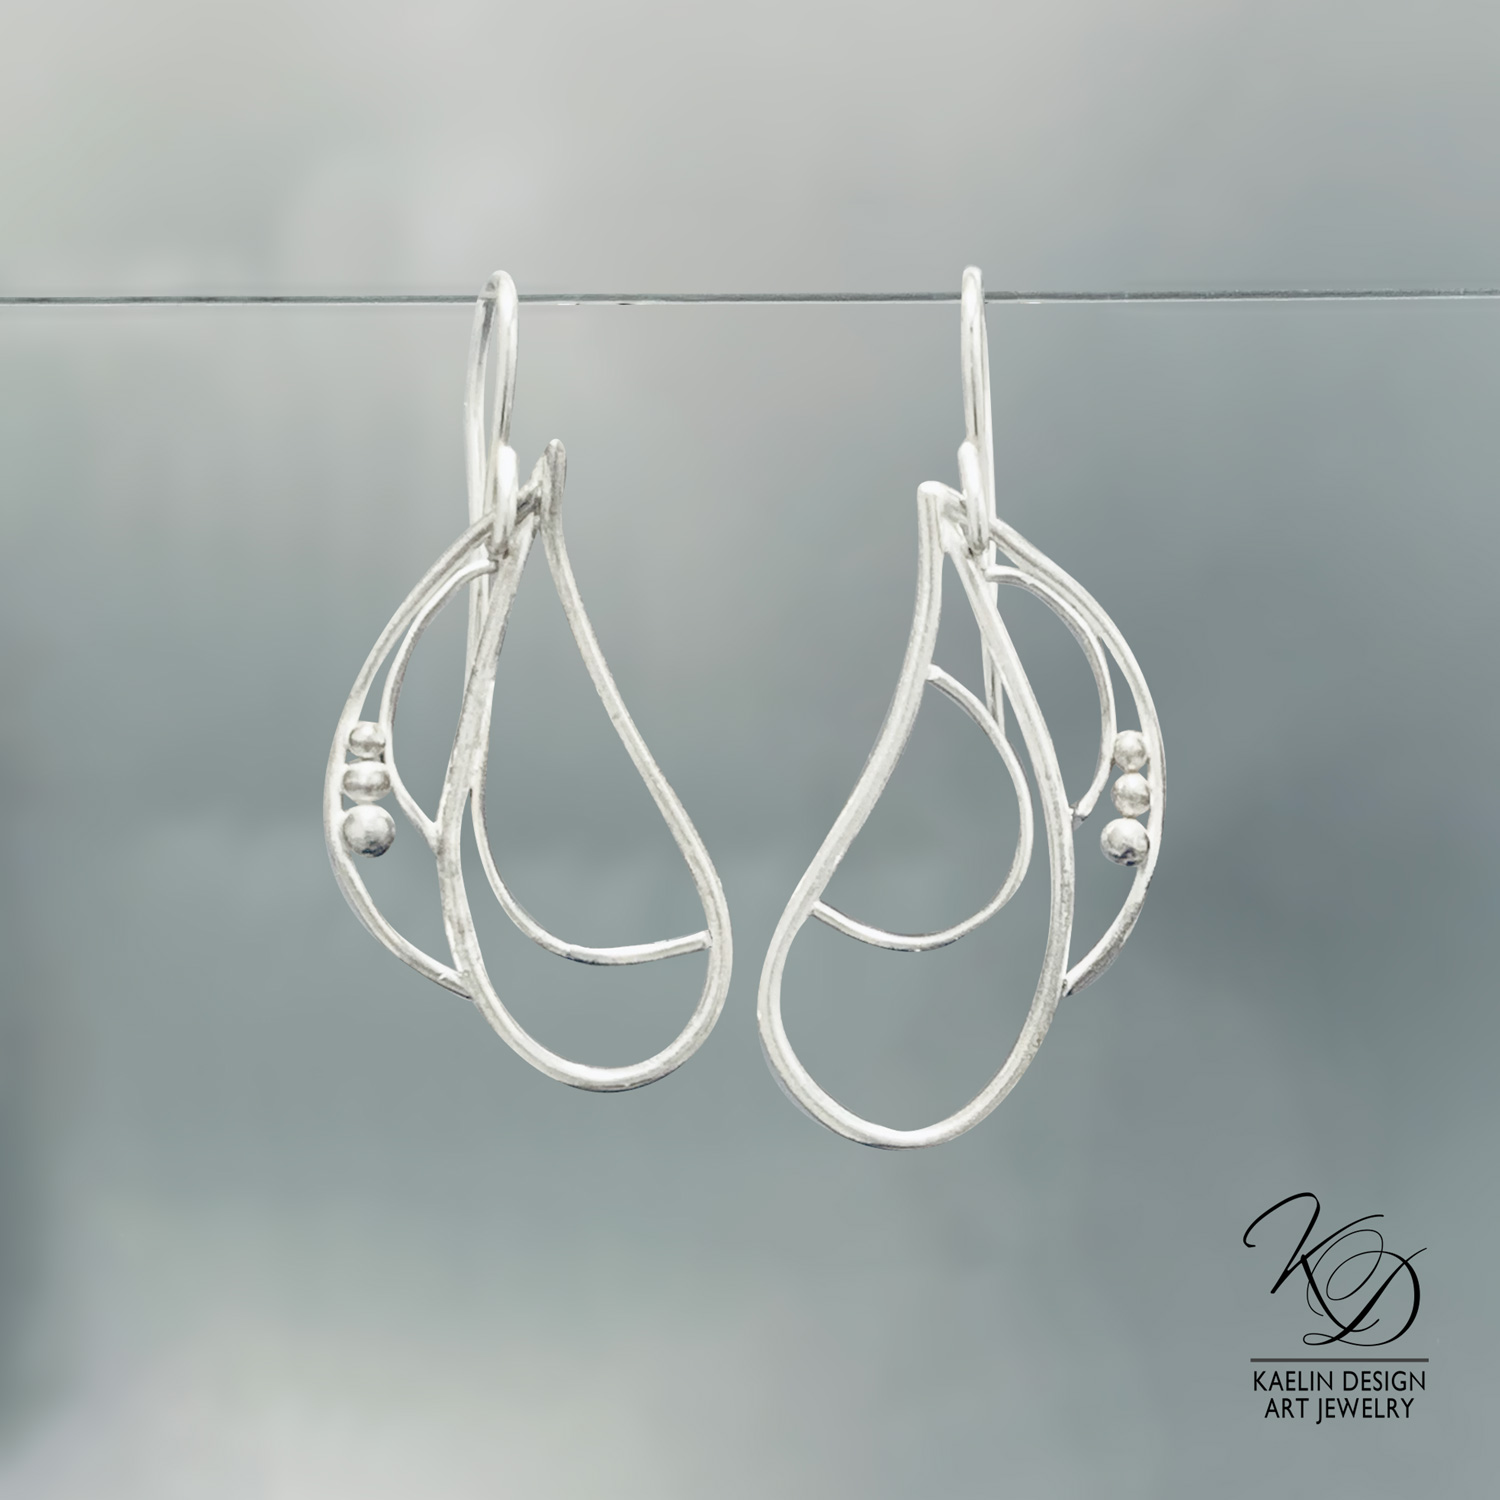 Open Water Sterling Silver Earrings by Kaelin Design